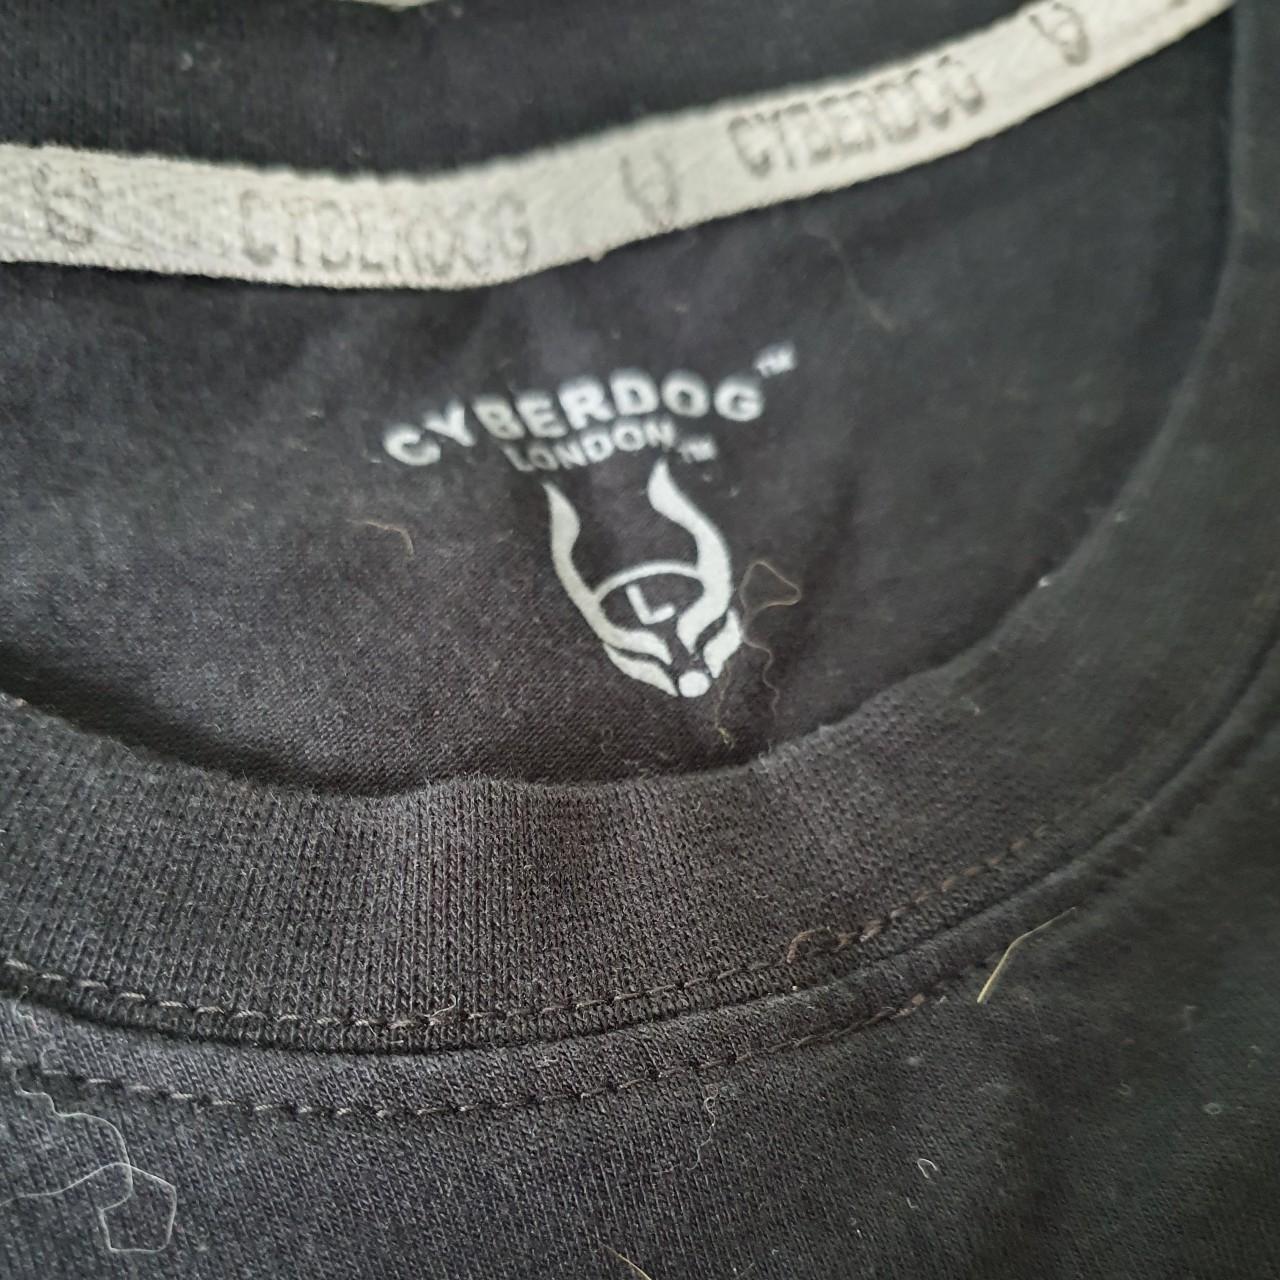 Cyberdog Black Velvet Logo Mens T-shirt. Bought in... - Depop